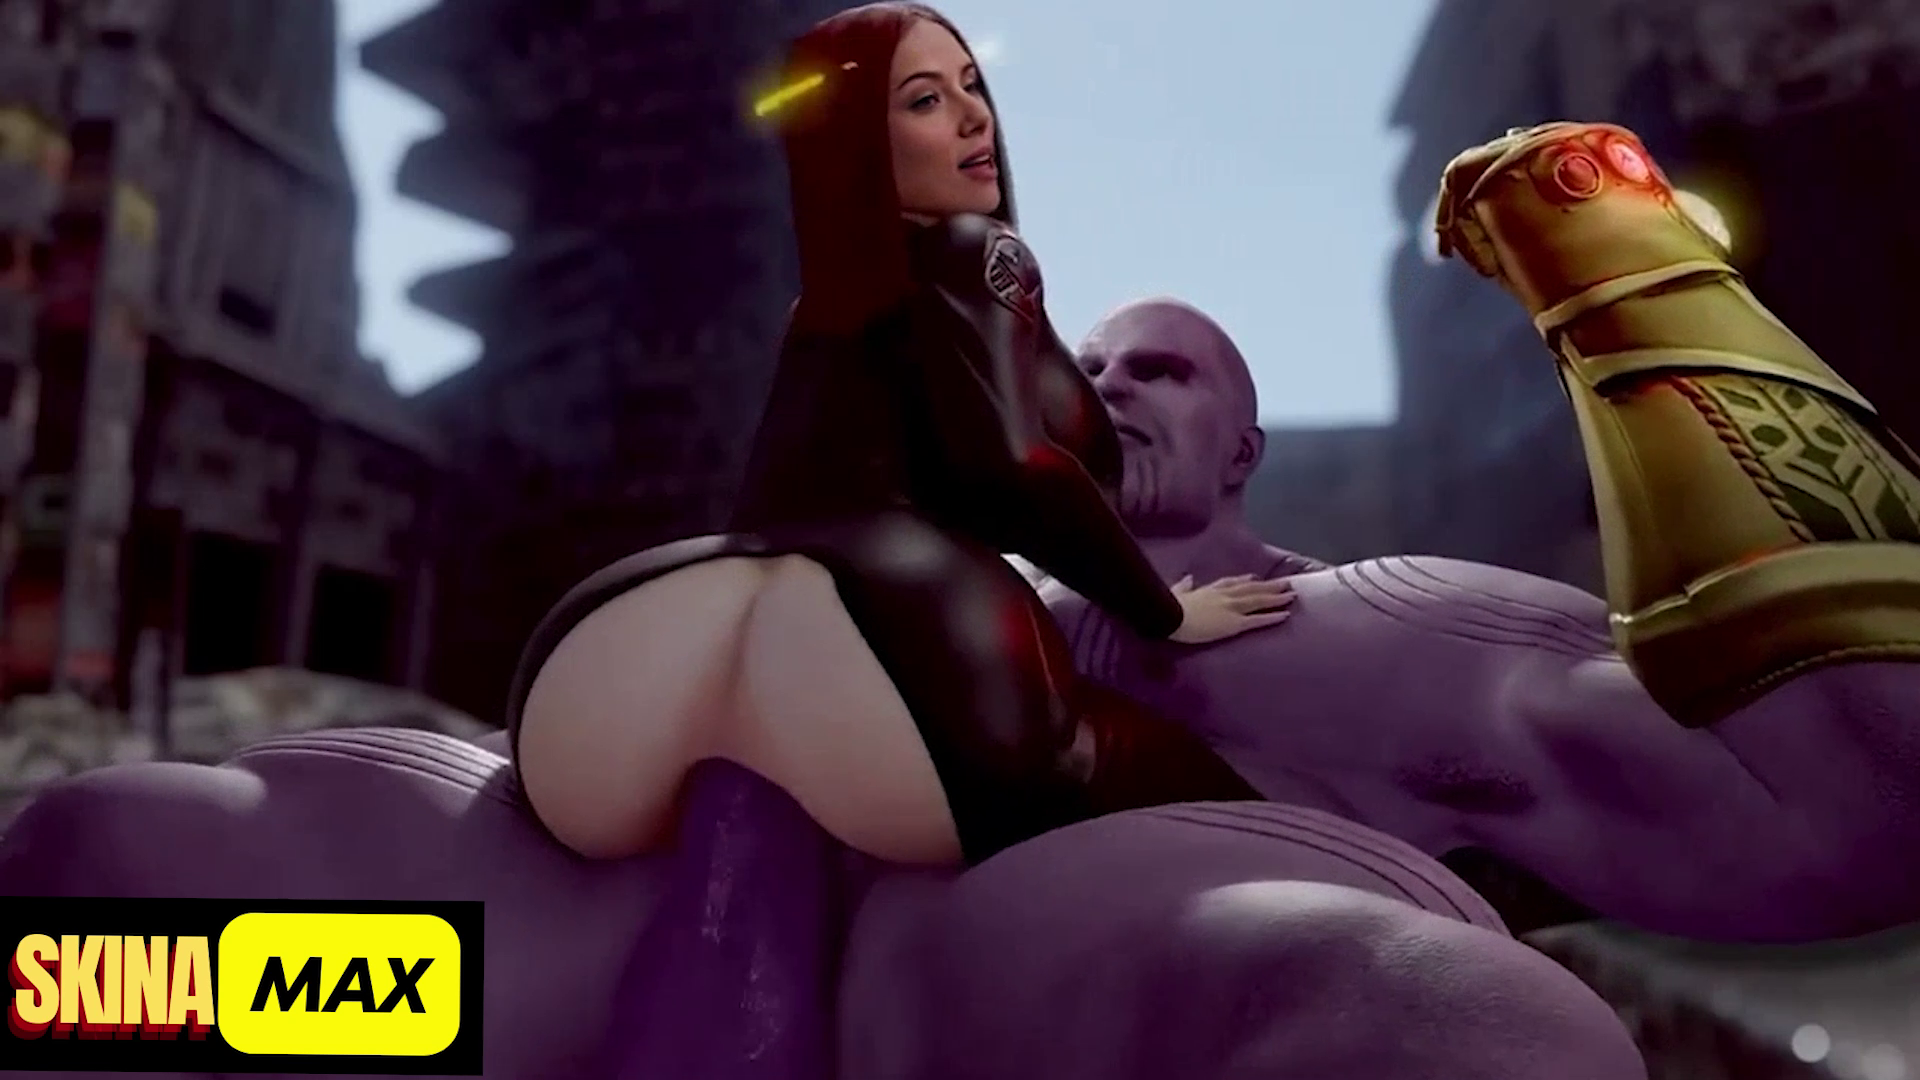 Black widow is Broken by Thanos. Cloned Voice! DeepFake Porn - MrDeepFakes